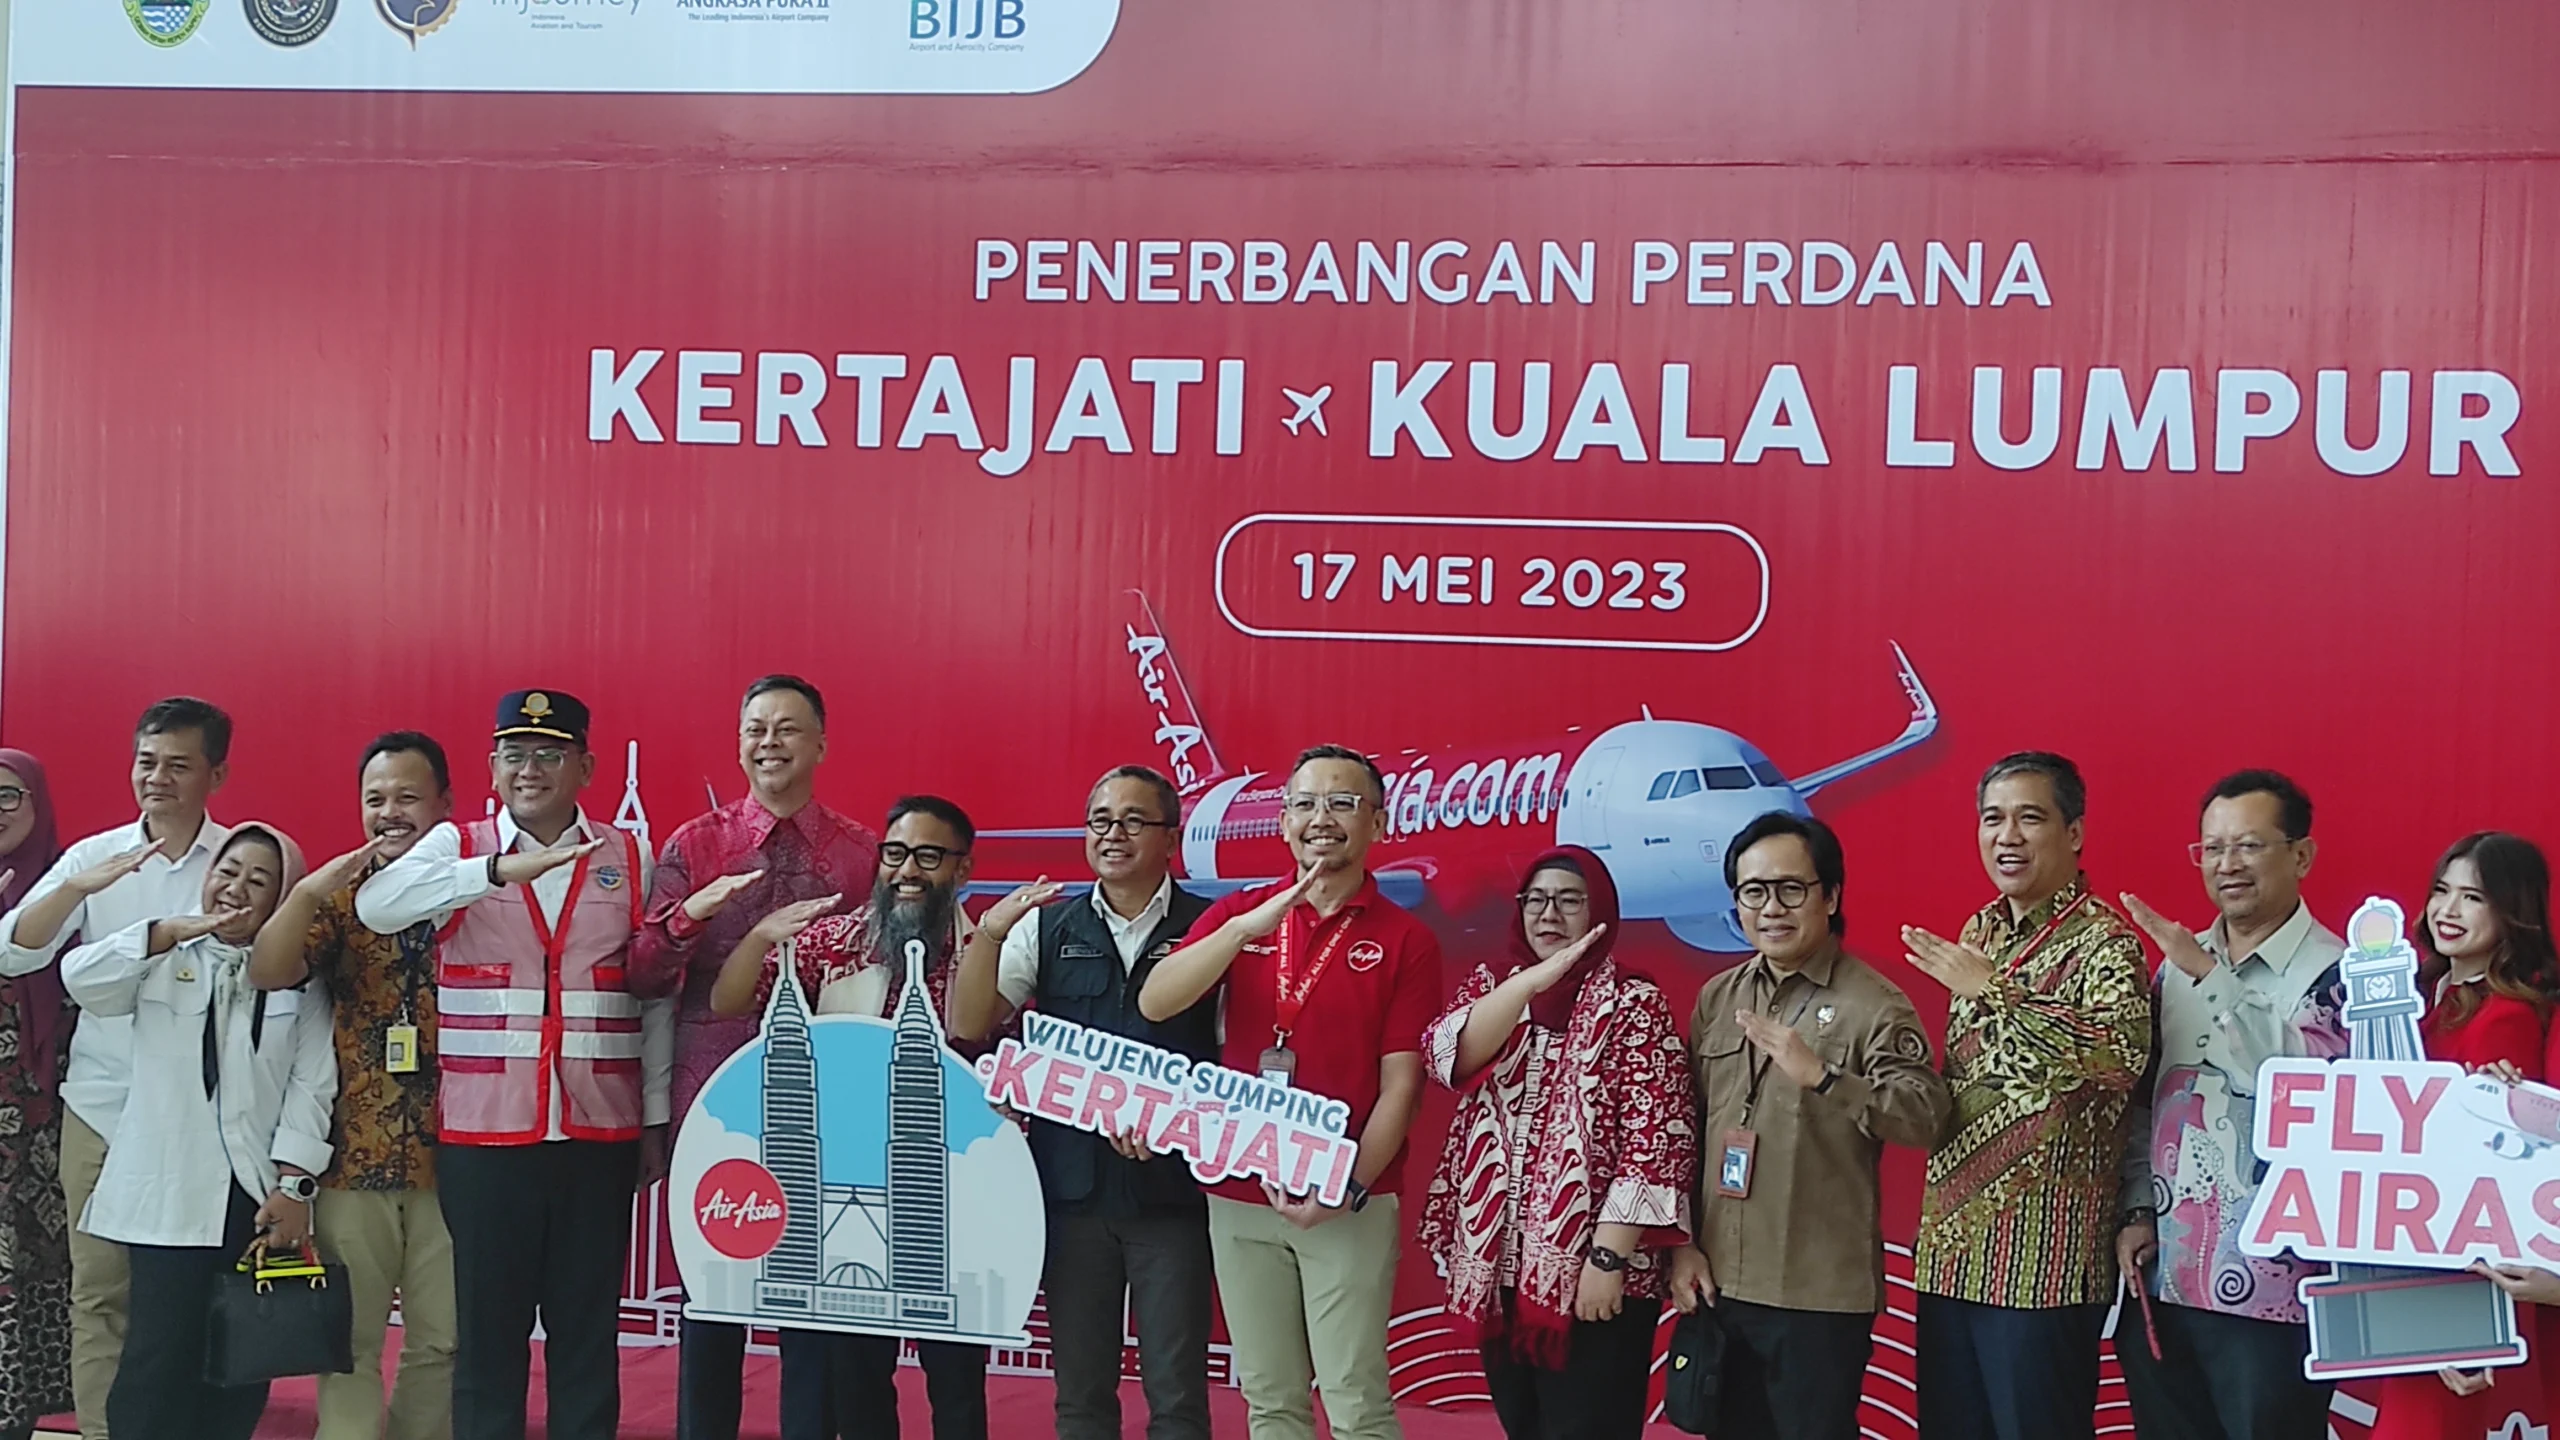 PENERBANGAN PERDANA: Penerbangan perdana dari BIJB Kertajati ke Kuala Lumpur dilaksanakan Rabu (17/5) dengan animo penumpang yang cukup tinggi